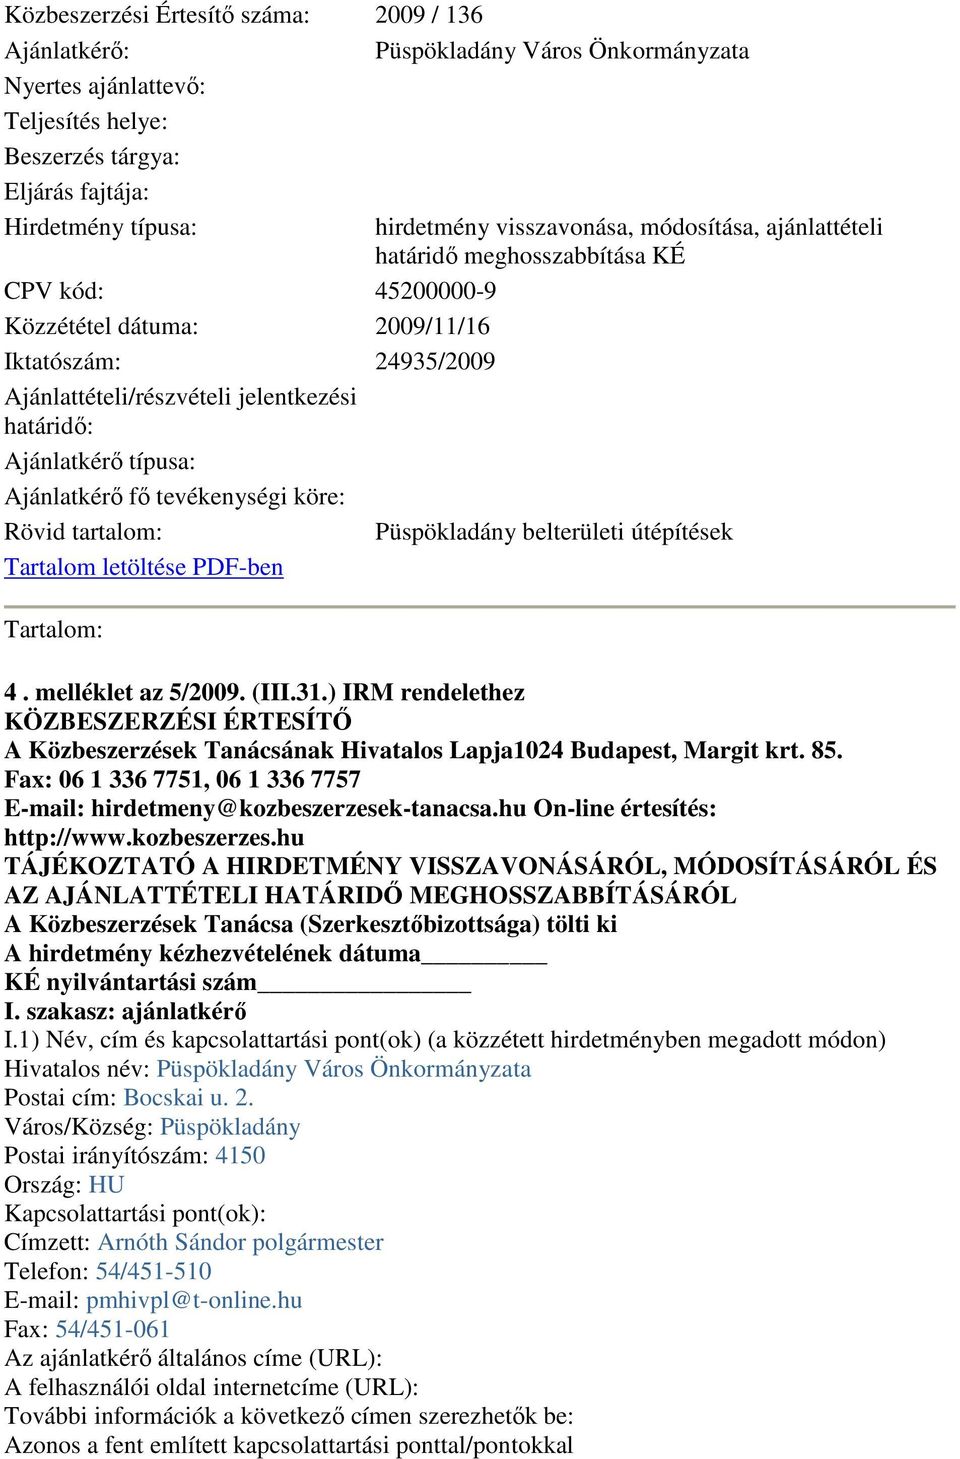 Ajánlatkérı típusa: Ajánlatkérı fı tevékenységi köre: Rövid tartalom: Püspökladány belterületi útépítések Tartalom letöltése PDF-ben Tartalom: 4. melléklet az 5/2009. (III.31.